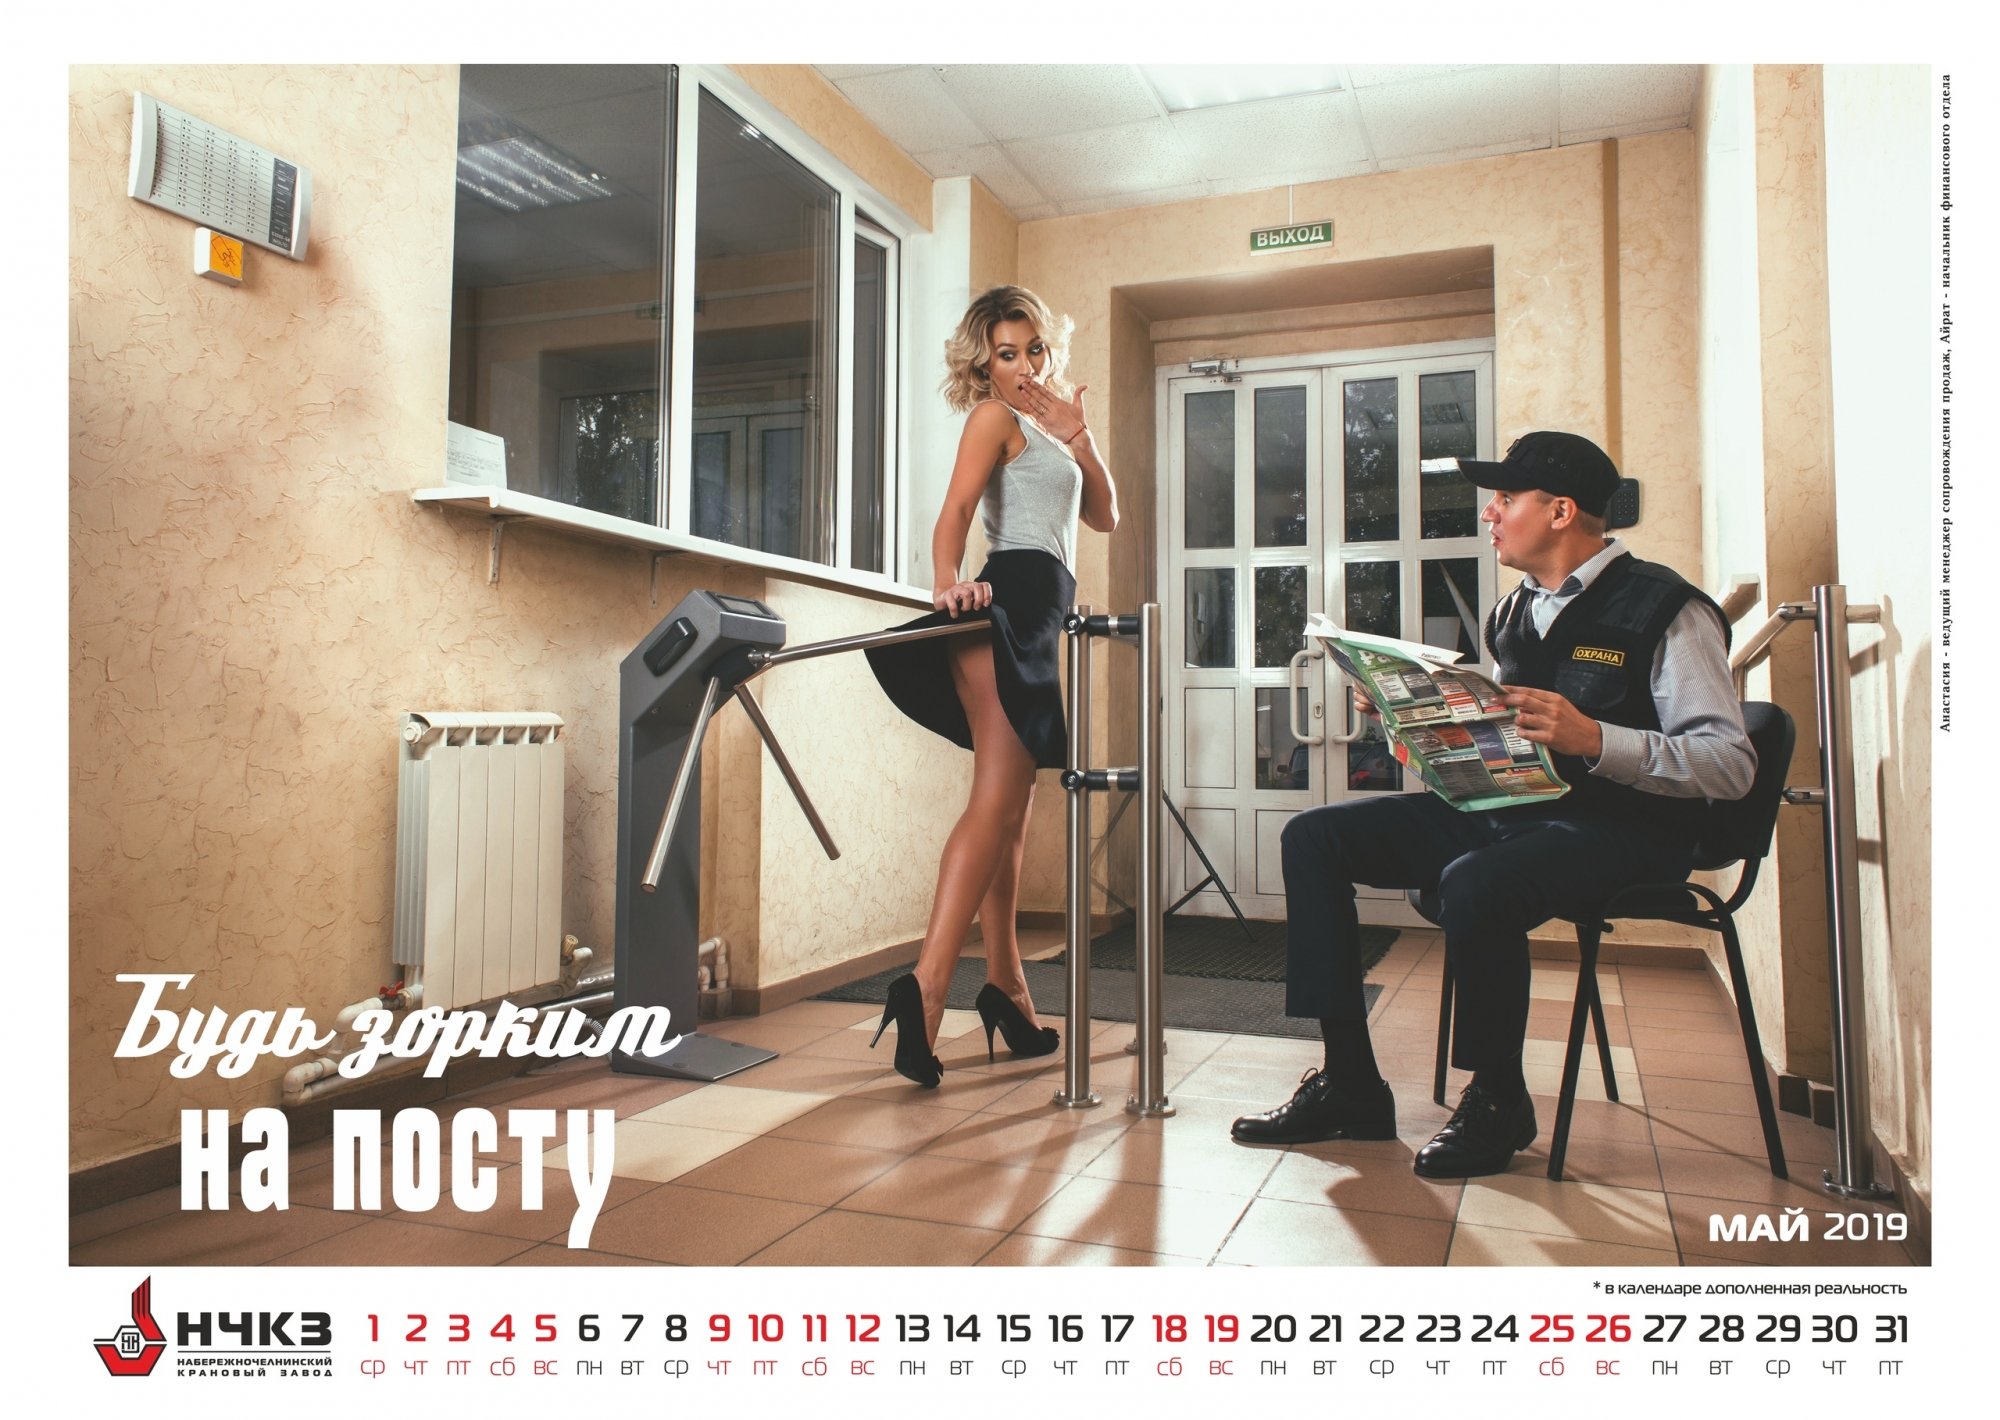 Крановый завод опубликовал новые фото эротического календаря